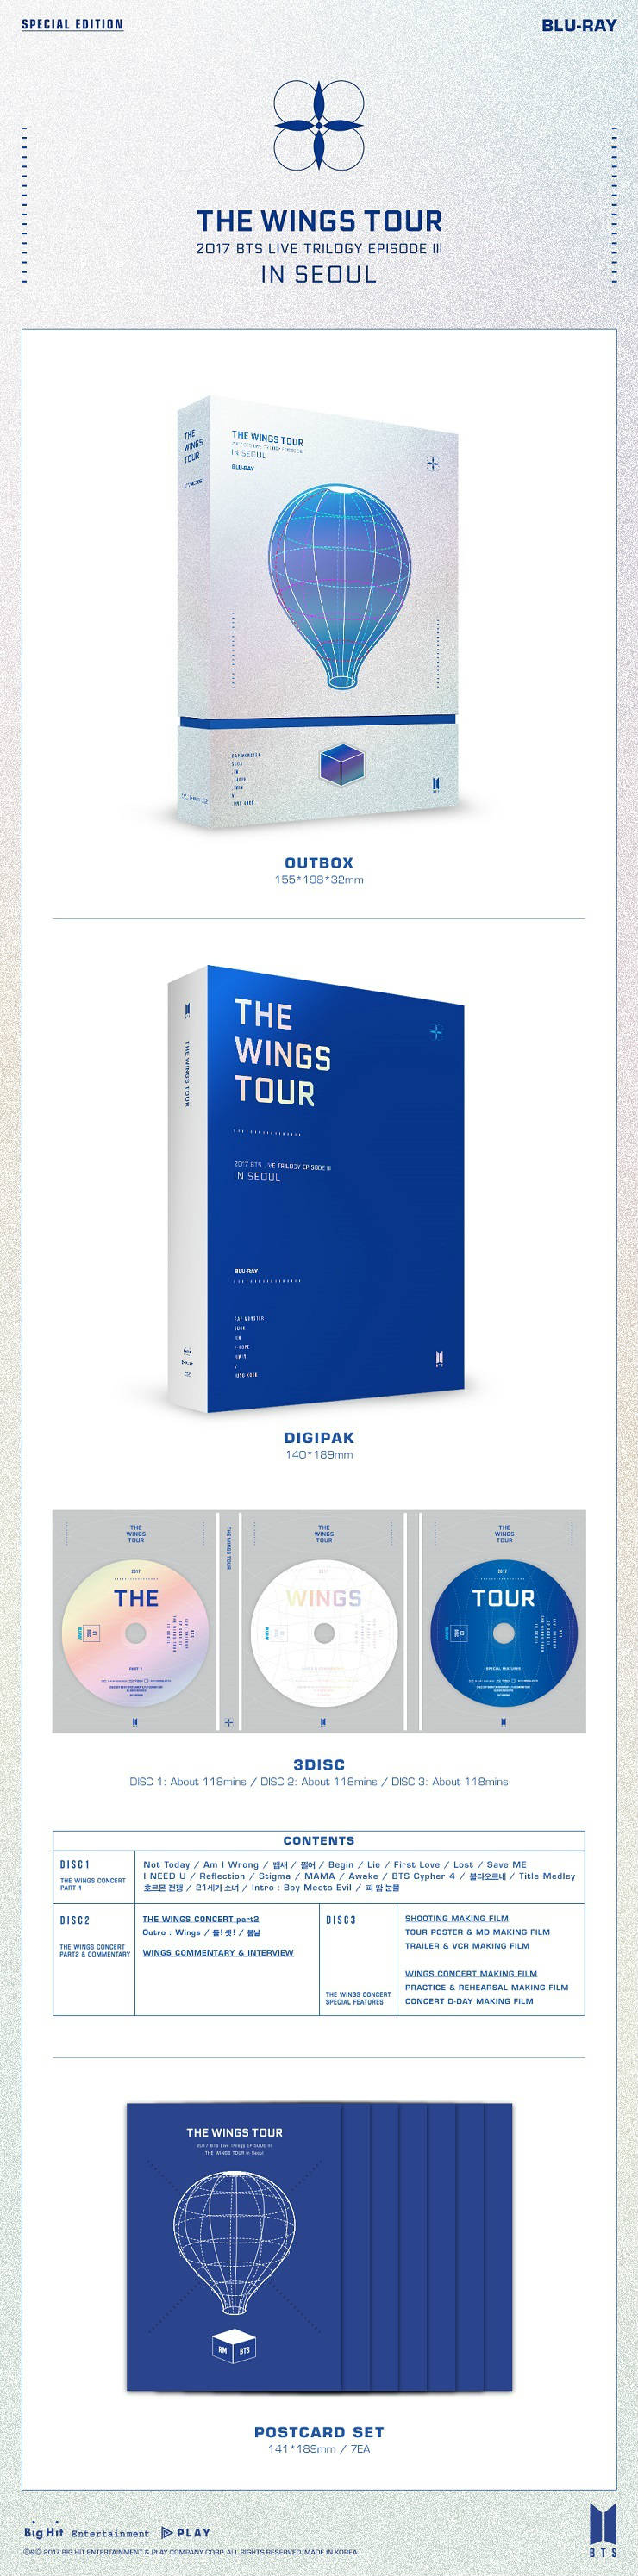 방탄소년단(BTS) - 2017 BTS Live Trilogy EPISODE III THE WINGS TOUR in Seoul CONCERT Blu-ray